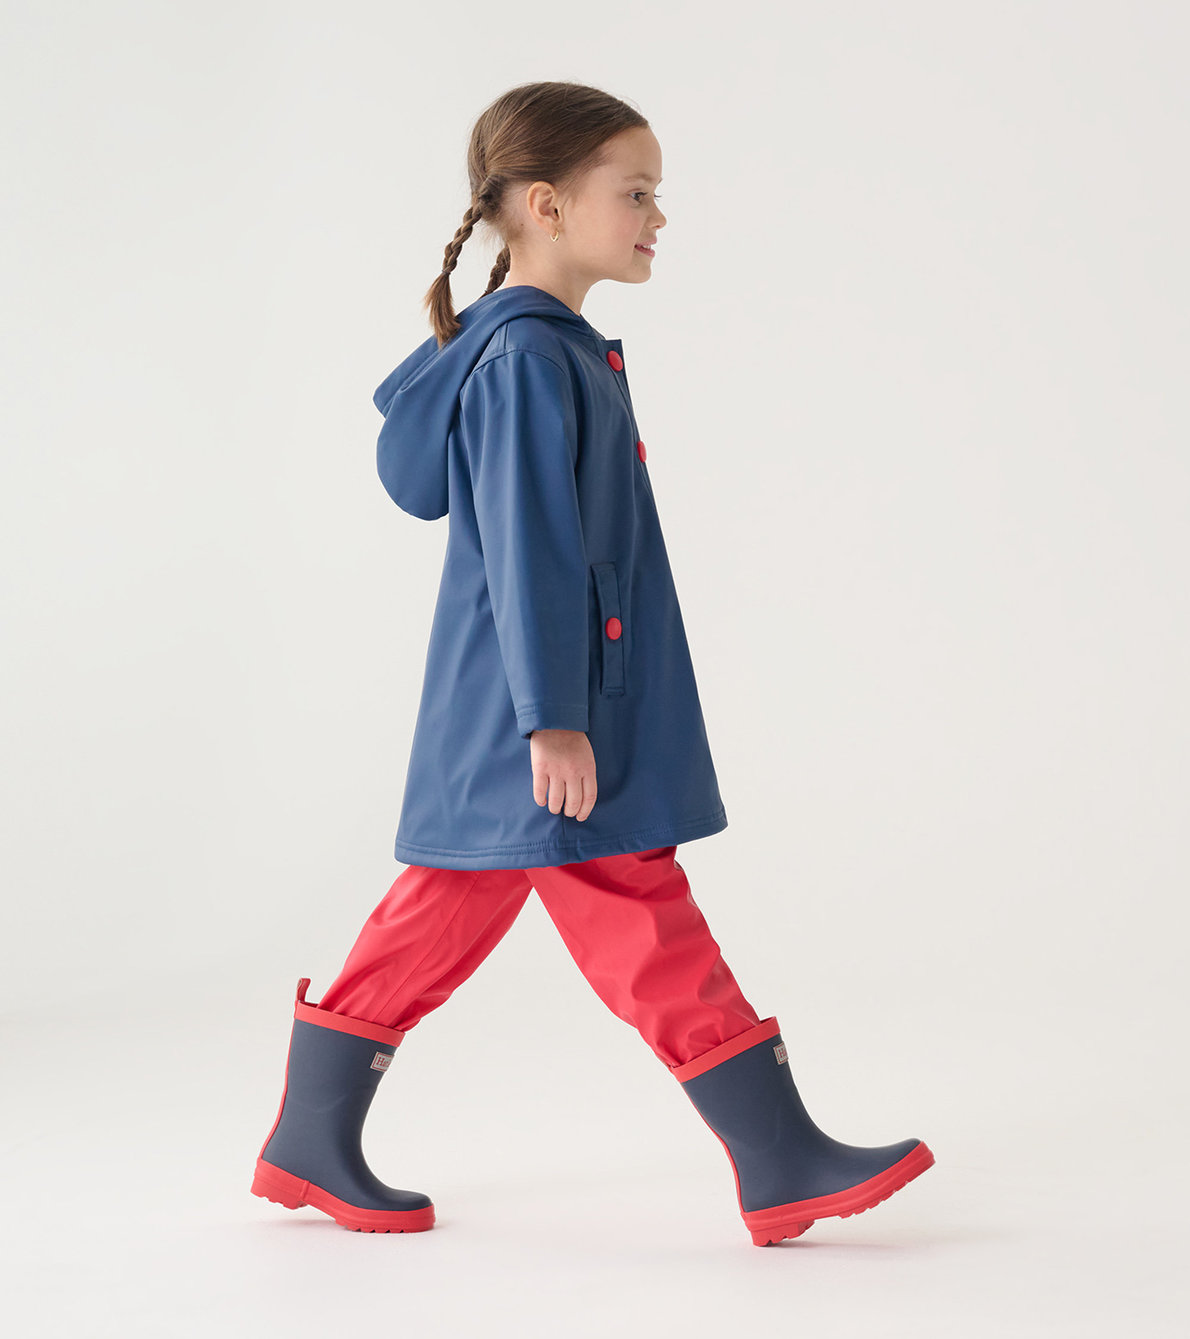 Agrandir l'image de Manteau de pluie pour enfant – Bleu marine et rayures rouges